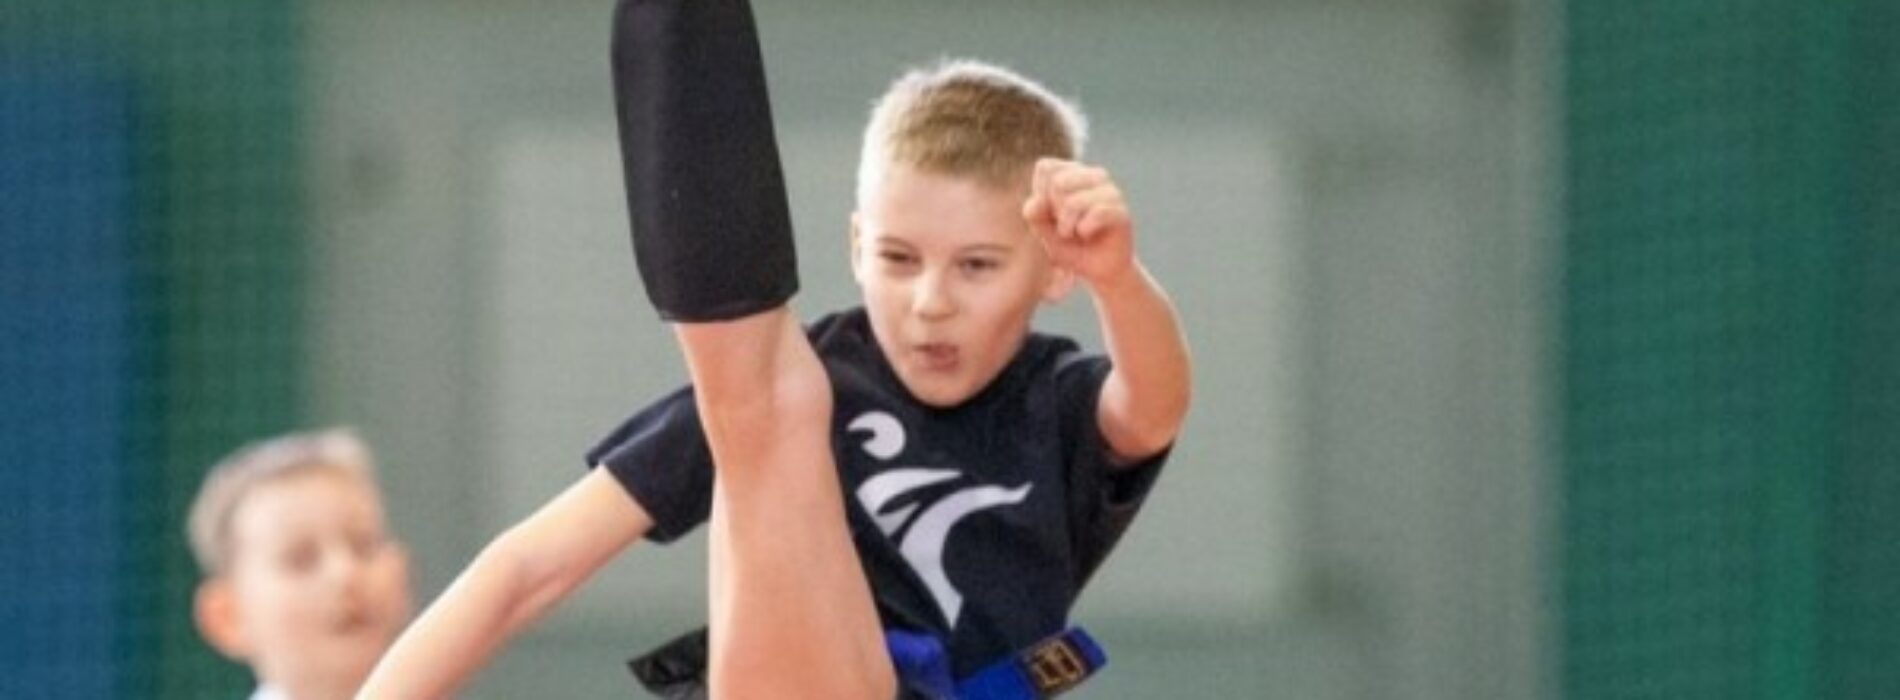 Turniej Taekwondo o Puchar Prezydenta Miasta Siemianowice Śląskie przechodzi do historii